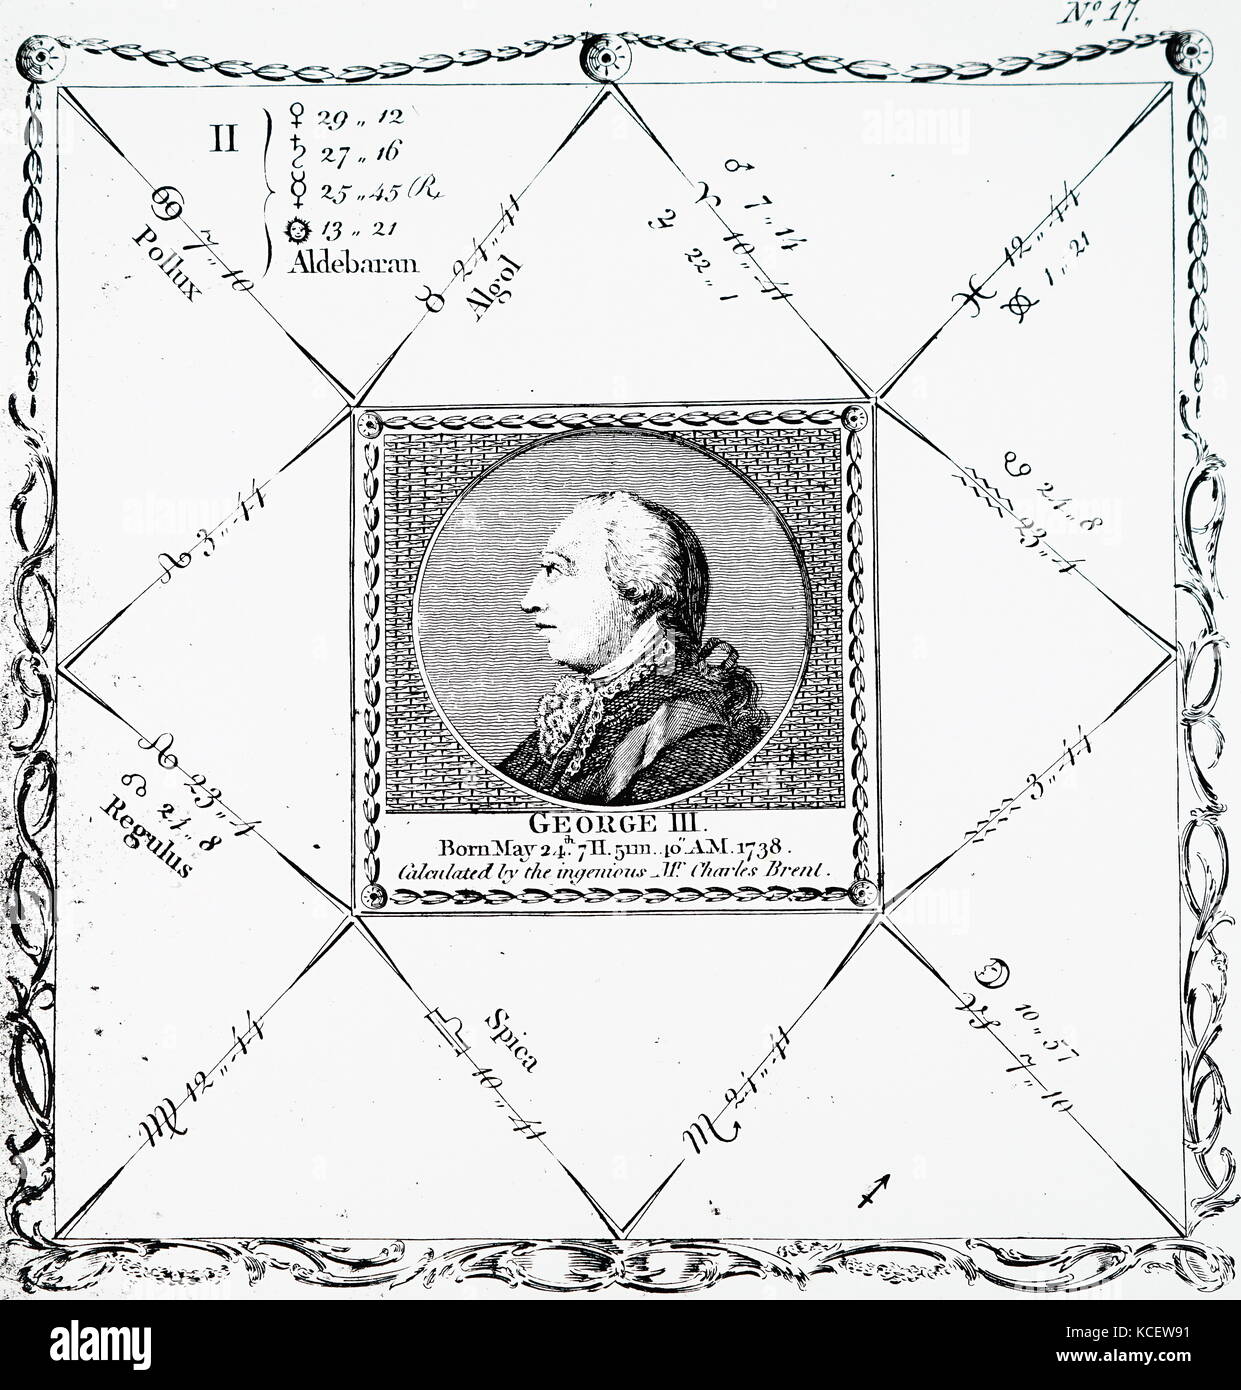 Natividad del rey George III del Reino Unido por Sibly Ebenezer (1751-1799), un médico inglés, astrólogo y escritor del ocultismo. Fecha del siglo XVIII Foto de stock